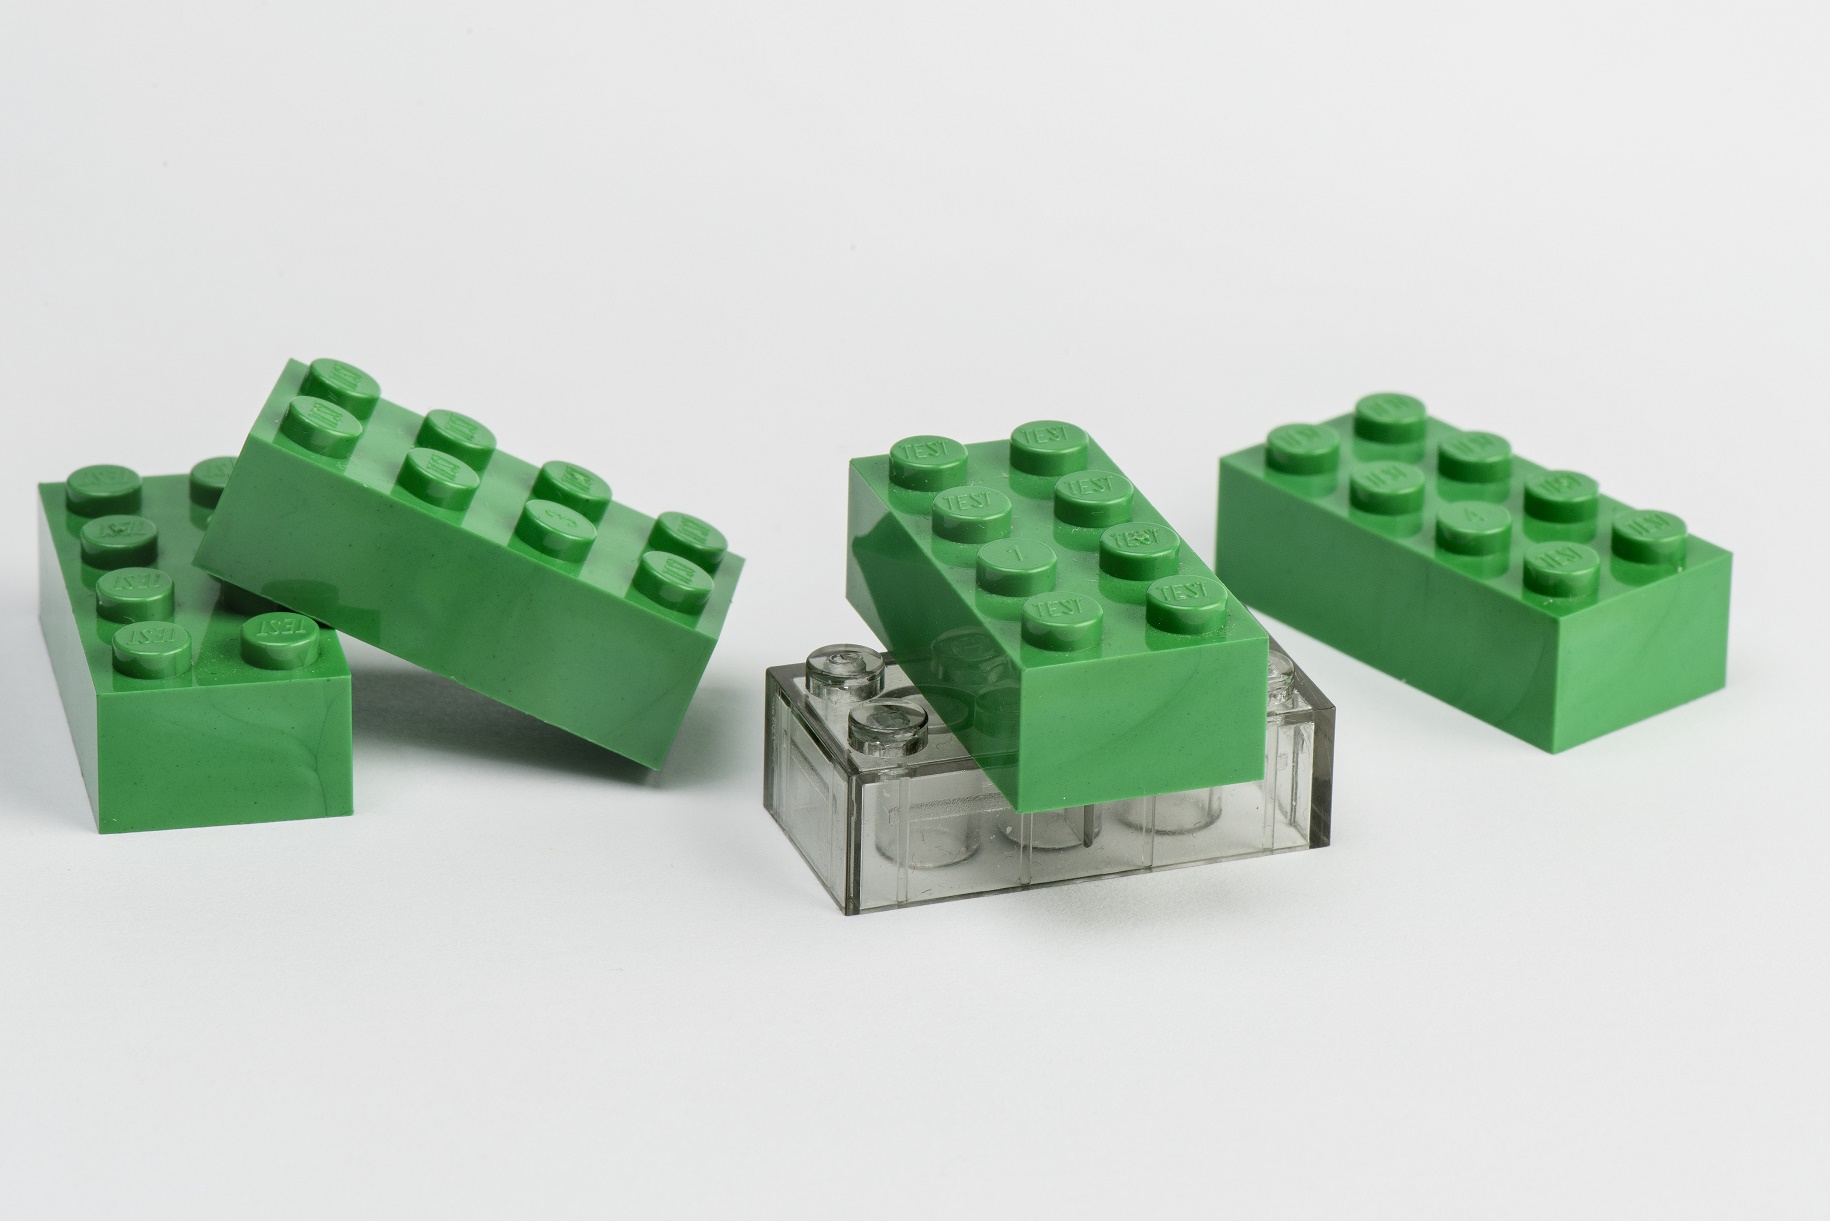 Farvel blur etage Legos salg stiger igen efter sløjt 2017